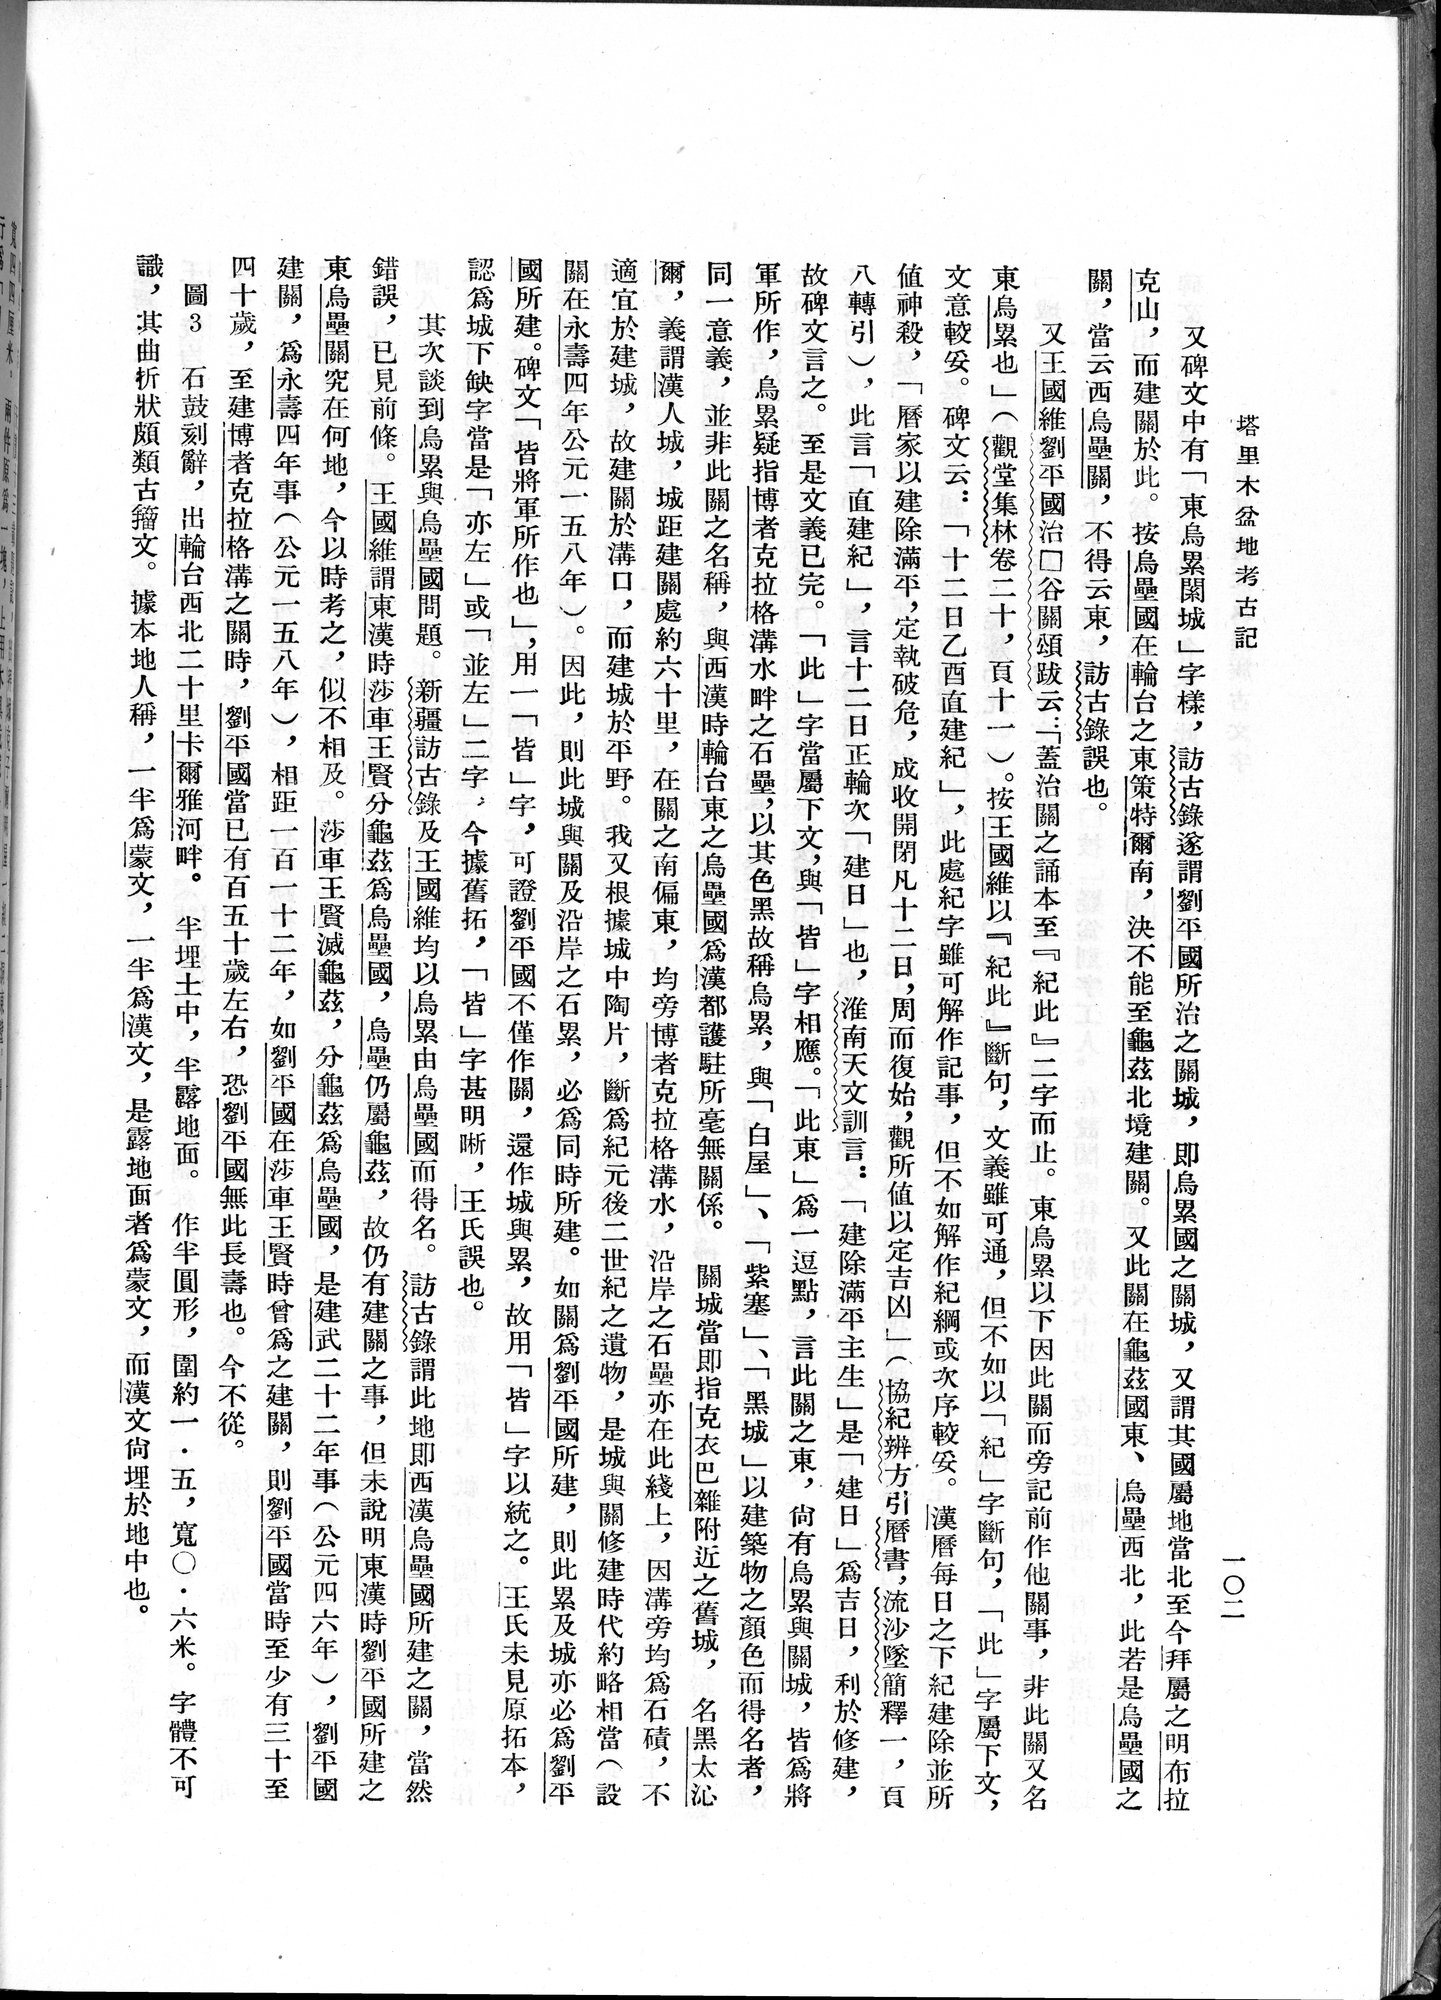 塔里木盆地考古記 : vol.1 / Page 166 (Grayscale High Resolution Image)